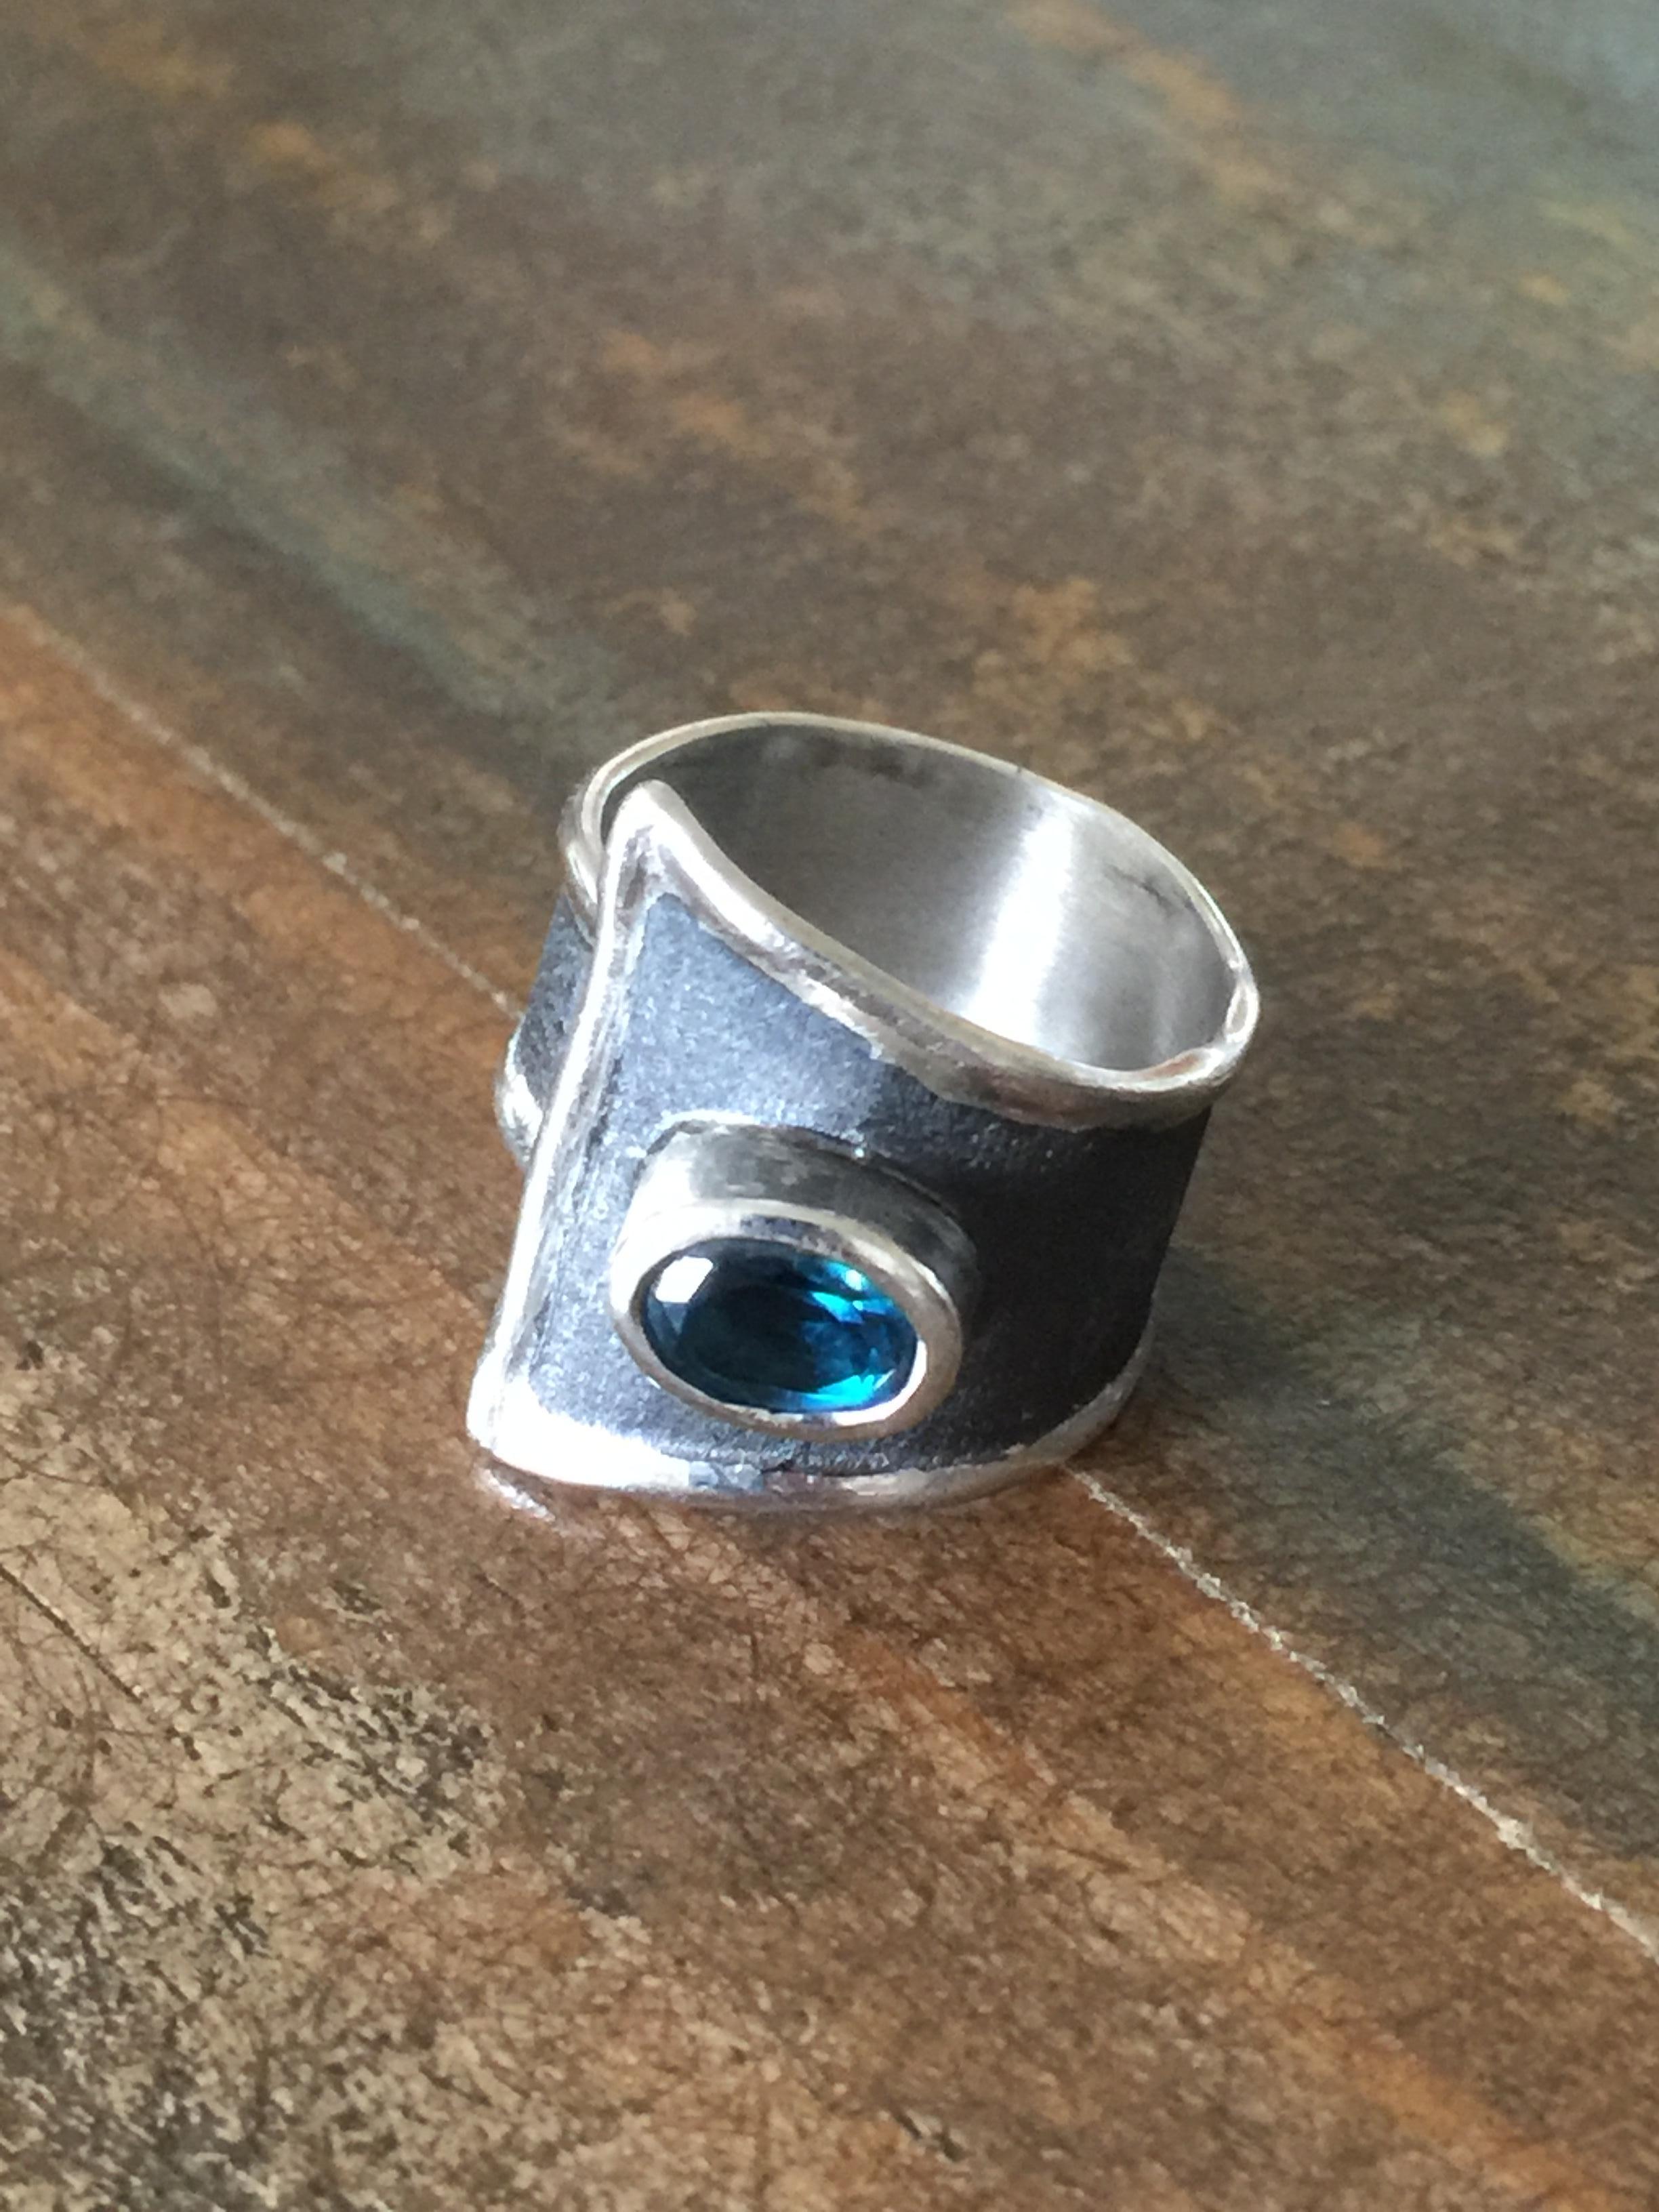 Präsentiert Unisex Yianni Creations handgefertigten Ring aus feinem Silber 950 Reinheit mit Palladium überzogen, um die Elemente zu widerstehen. Dieser Ring stammt aus der Hephestos-Kollektion. Der gebürstete Hintergrund ist mit schwarzem Rhodium